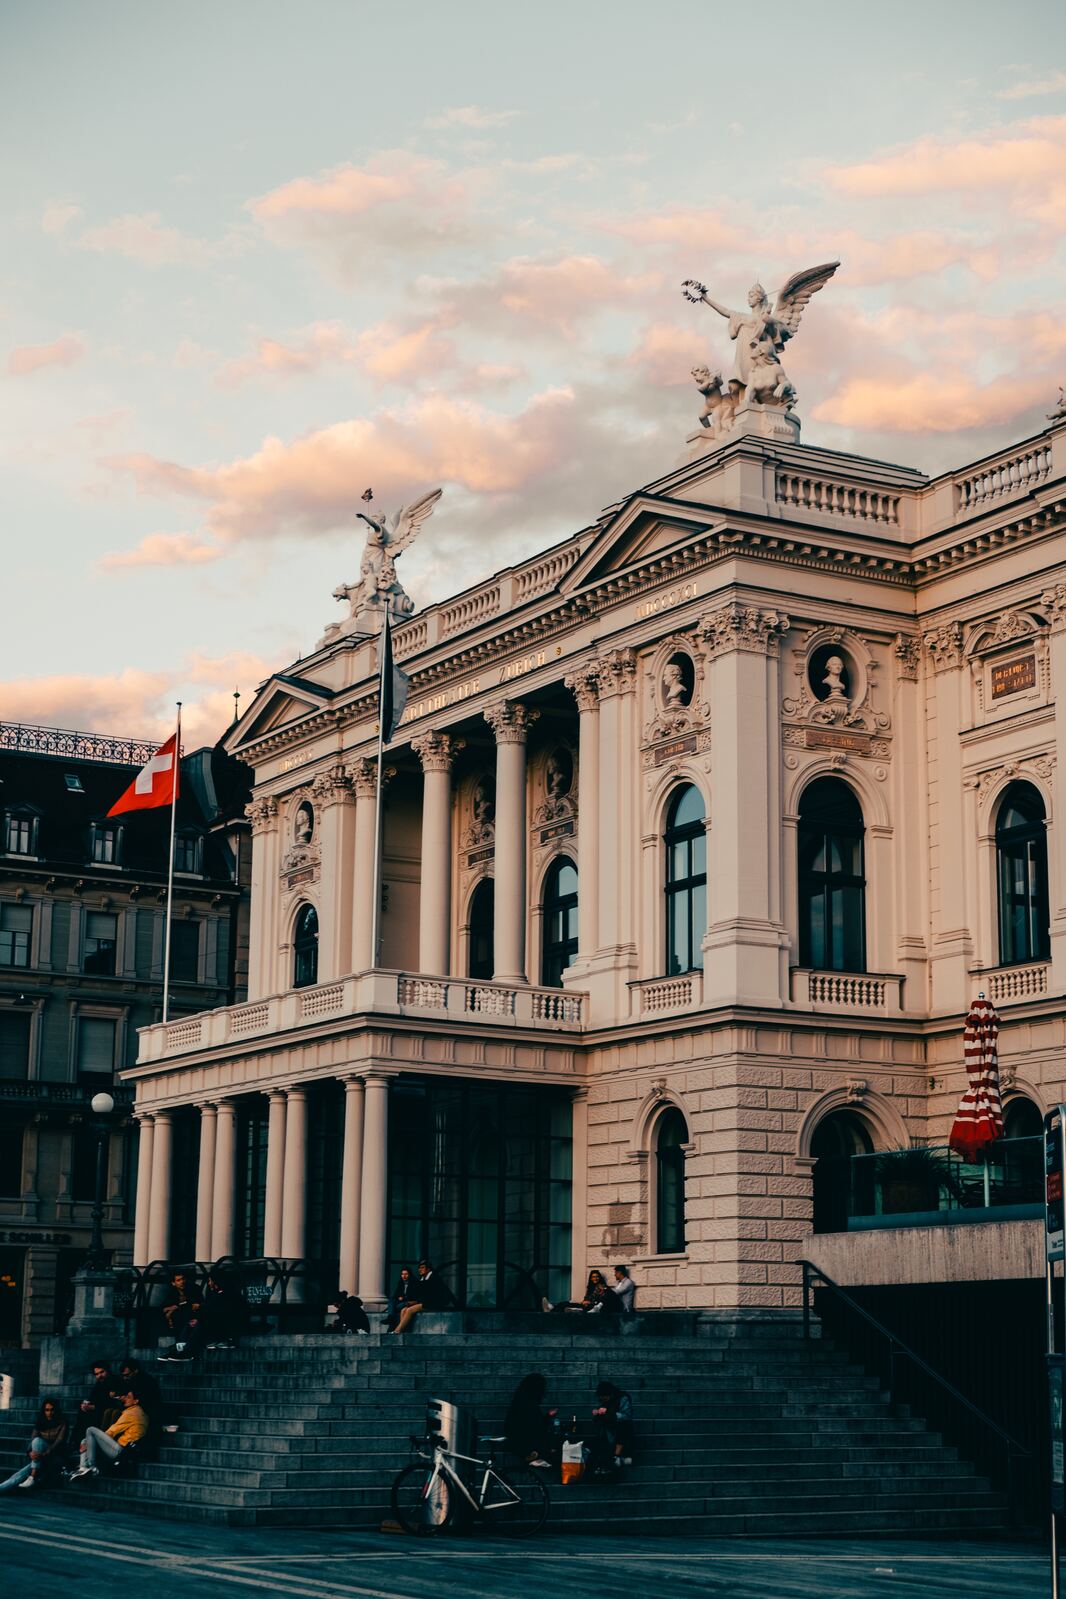 Image of Zurich Opera House (Opernhaus Zurich) by Team PhotoHound